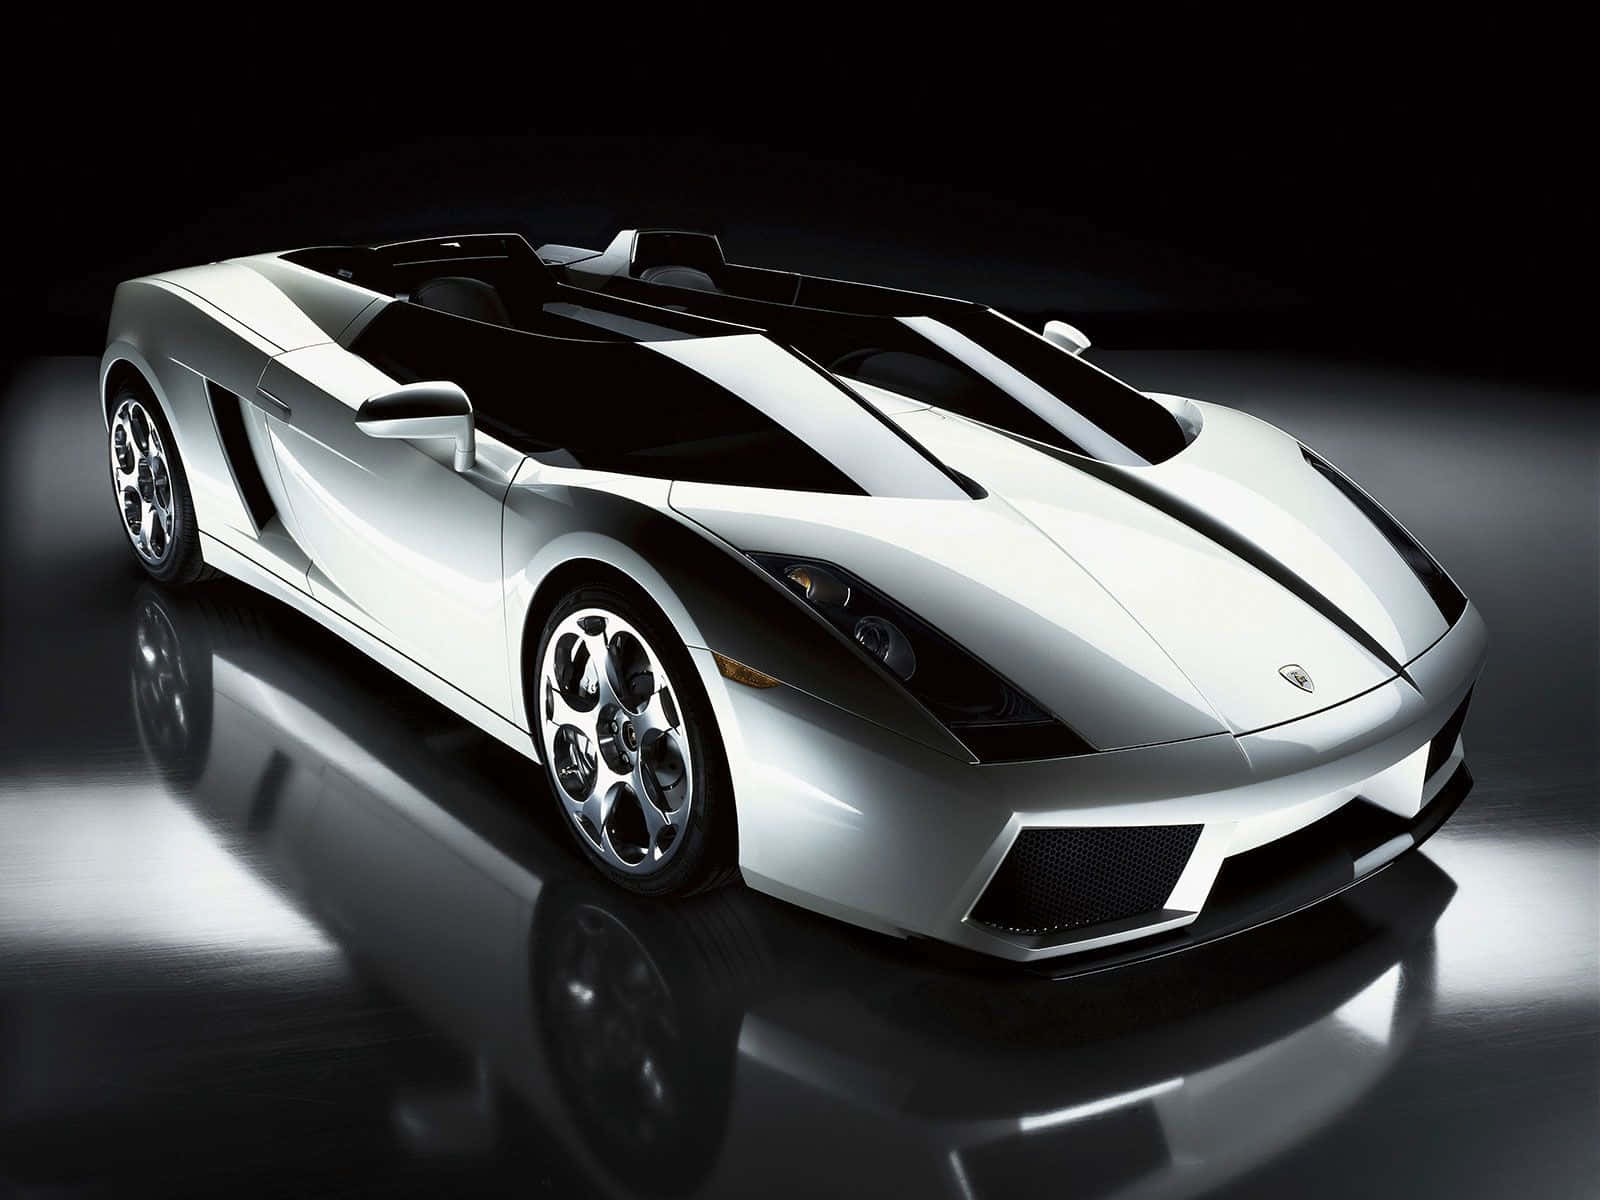 Fantastiskgrå Lamborghini Som Bästa Bilbakgrund.